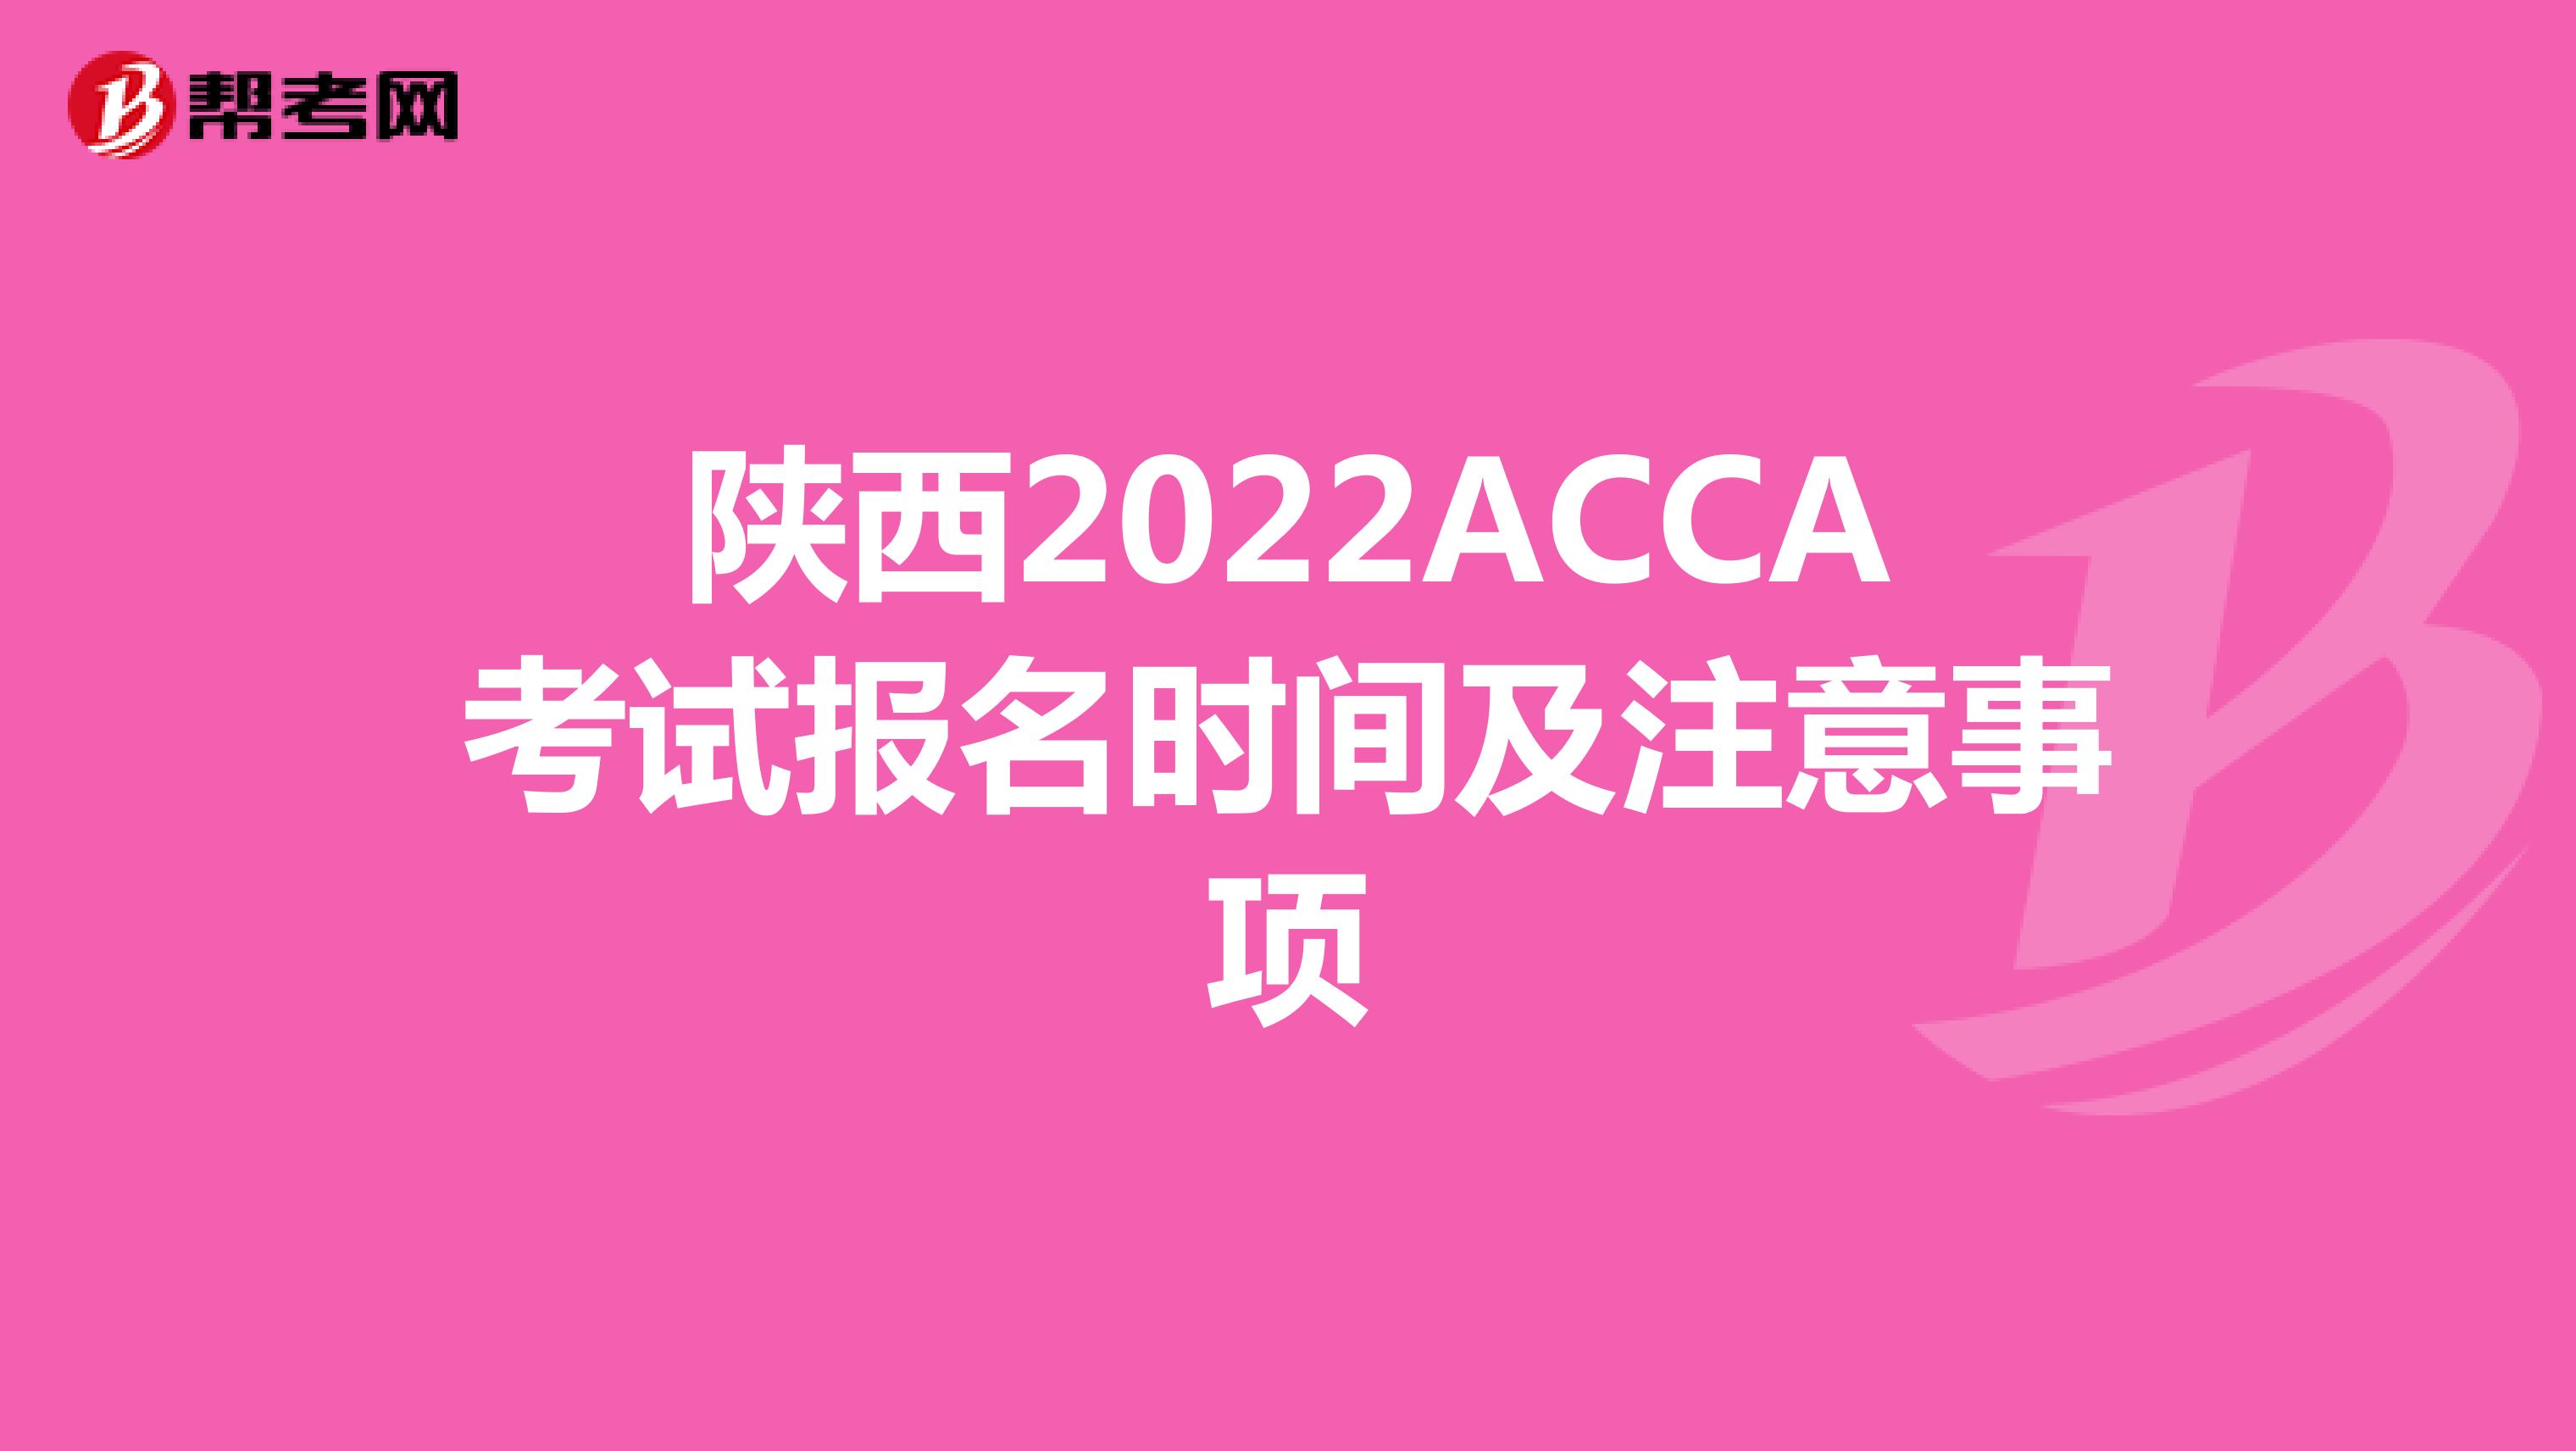 陕西2022ACCA考试报名时间及注意事项